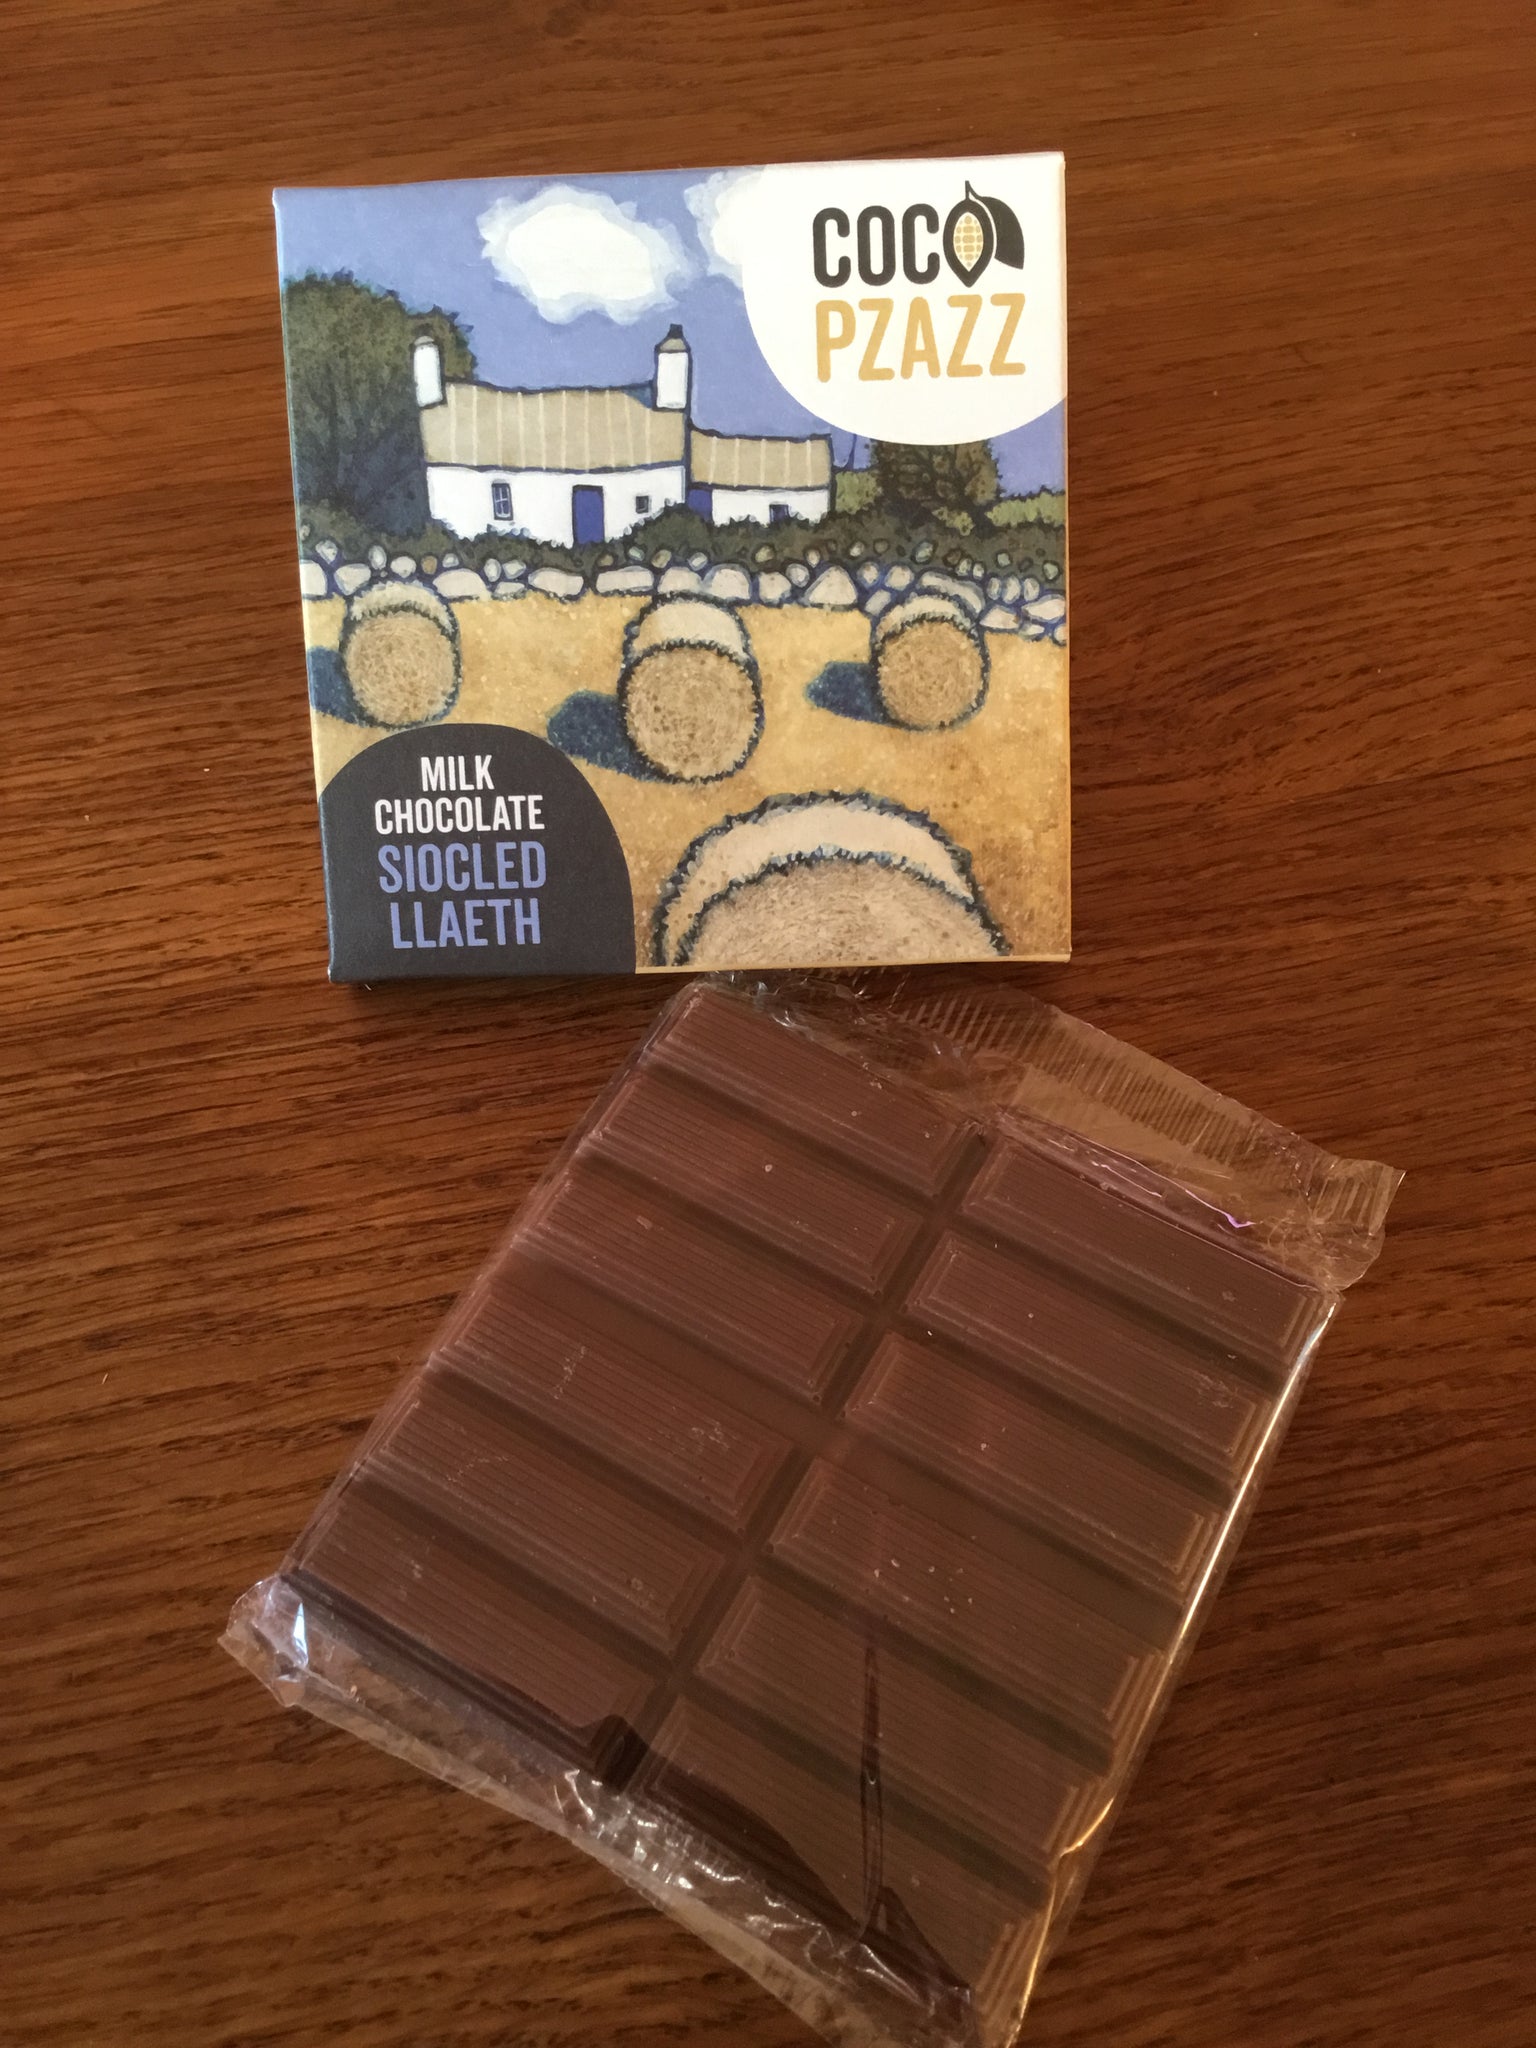 Coco Pzazz Milk chocolate bar